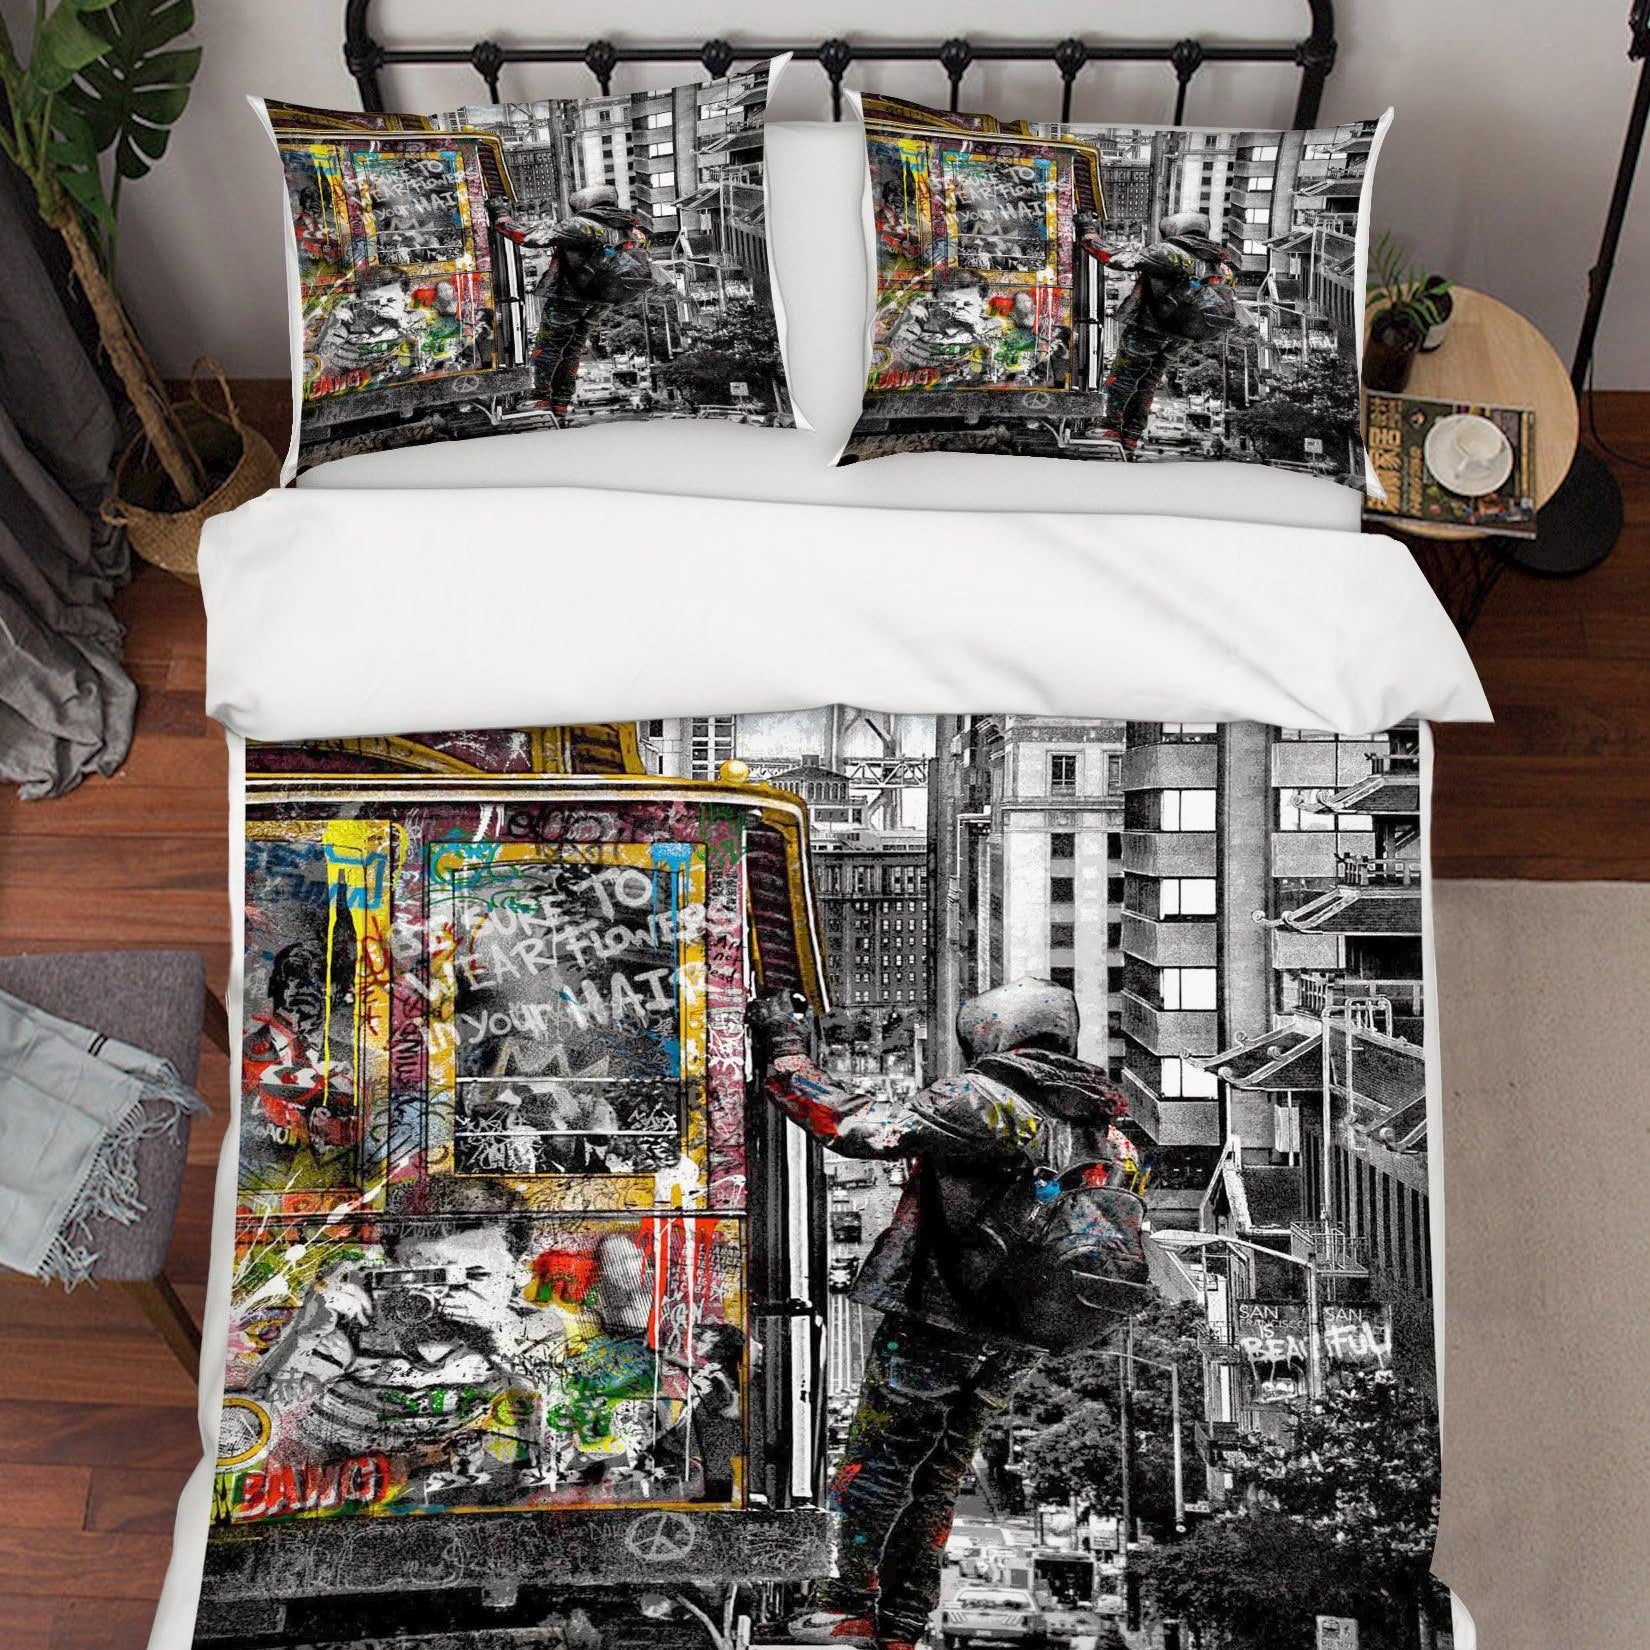 3D  SanFrancisco Is Beautiful Colorized Quilt Cover Set Bedding Set Duvet Cover Pillowcases  ZY D102- Jess Art Decoration